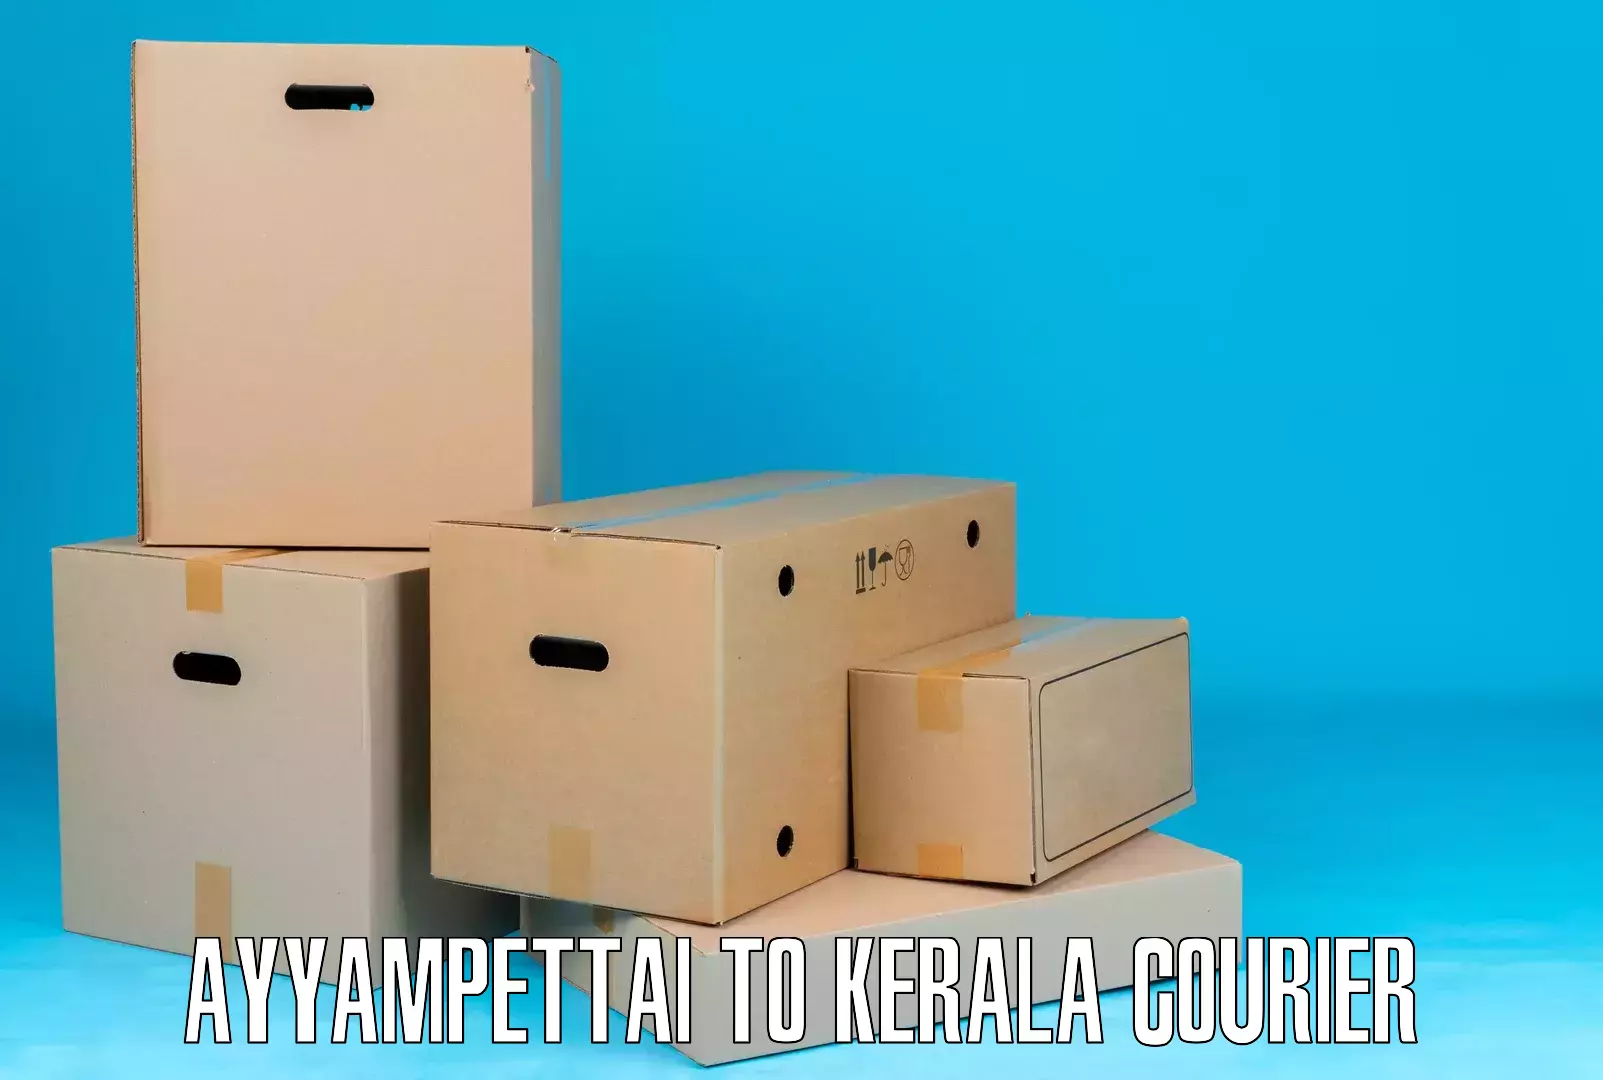 Express delivery network Ayyampettai to Kadanad